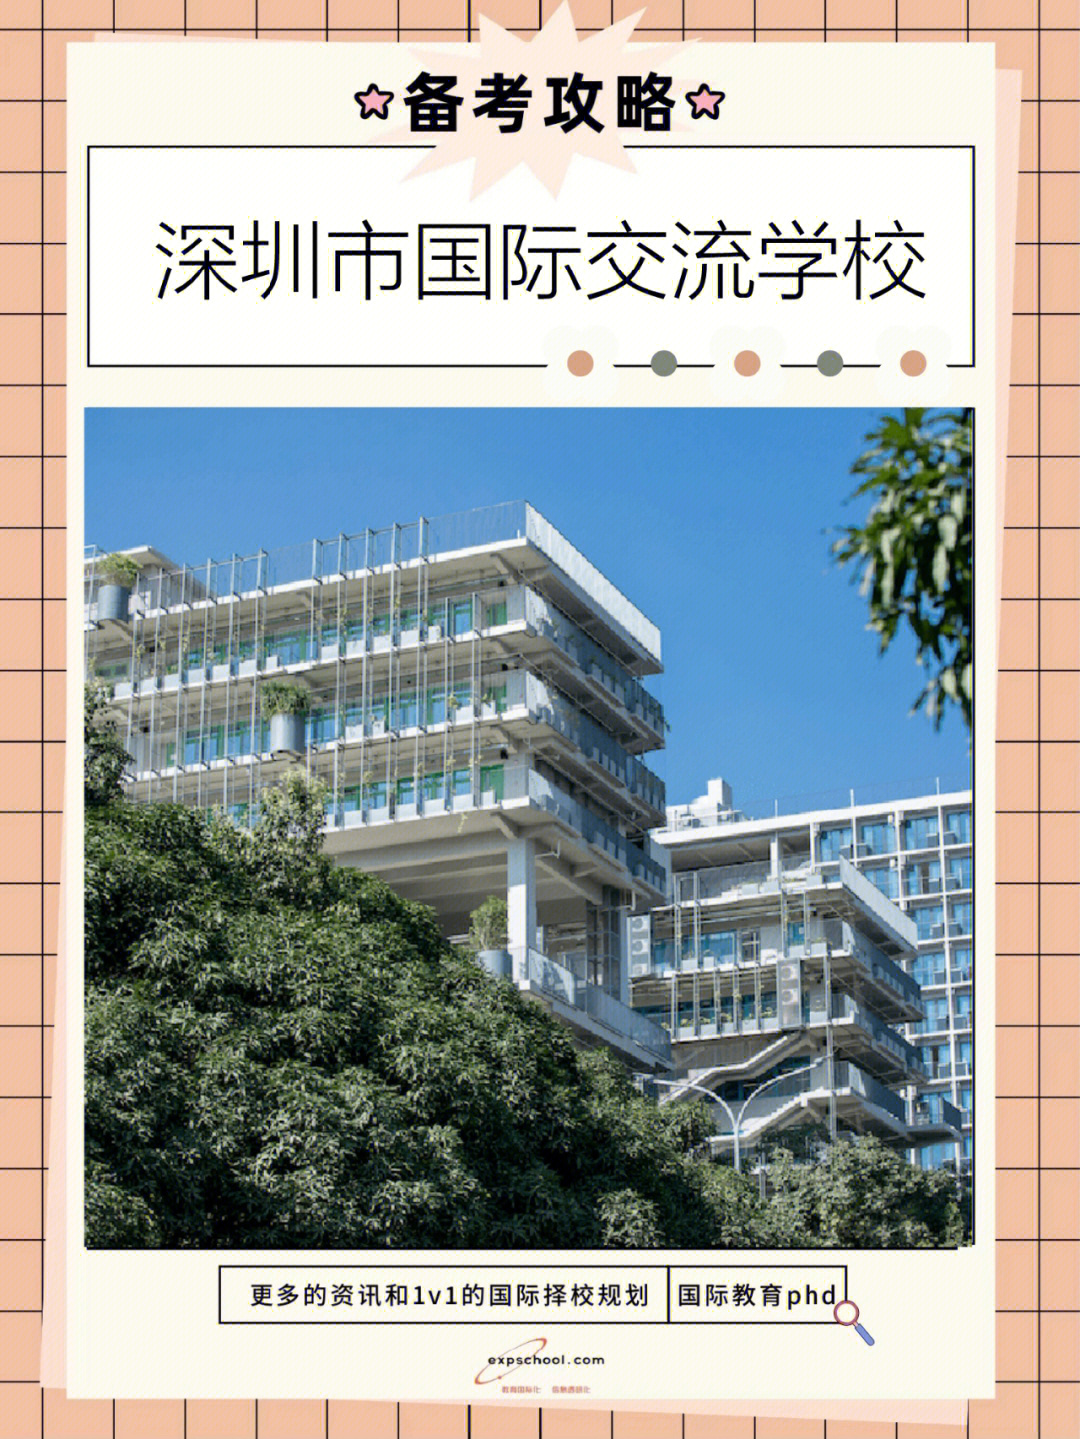 深圳国际交流学院校徽图片